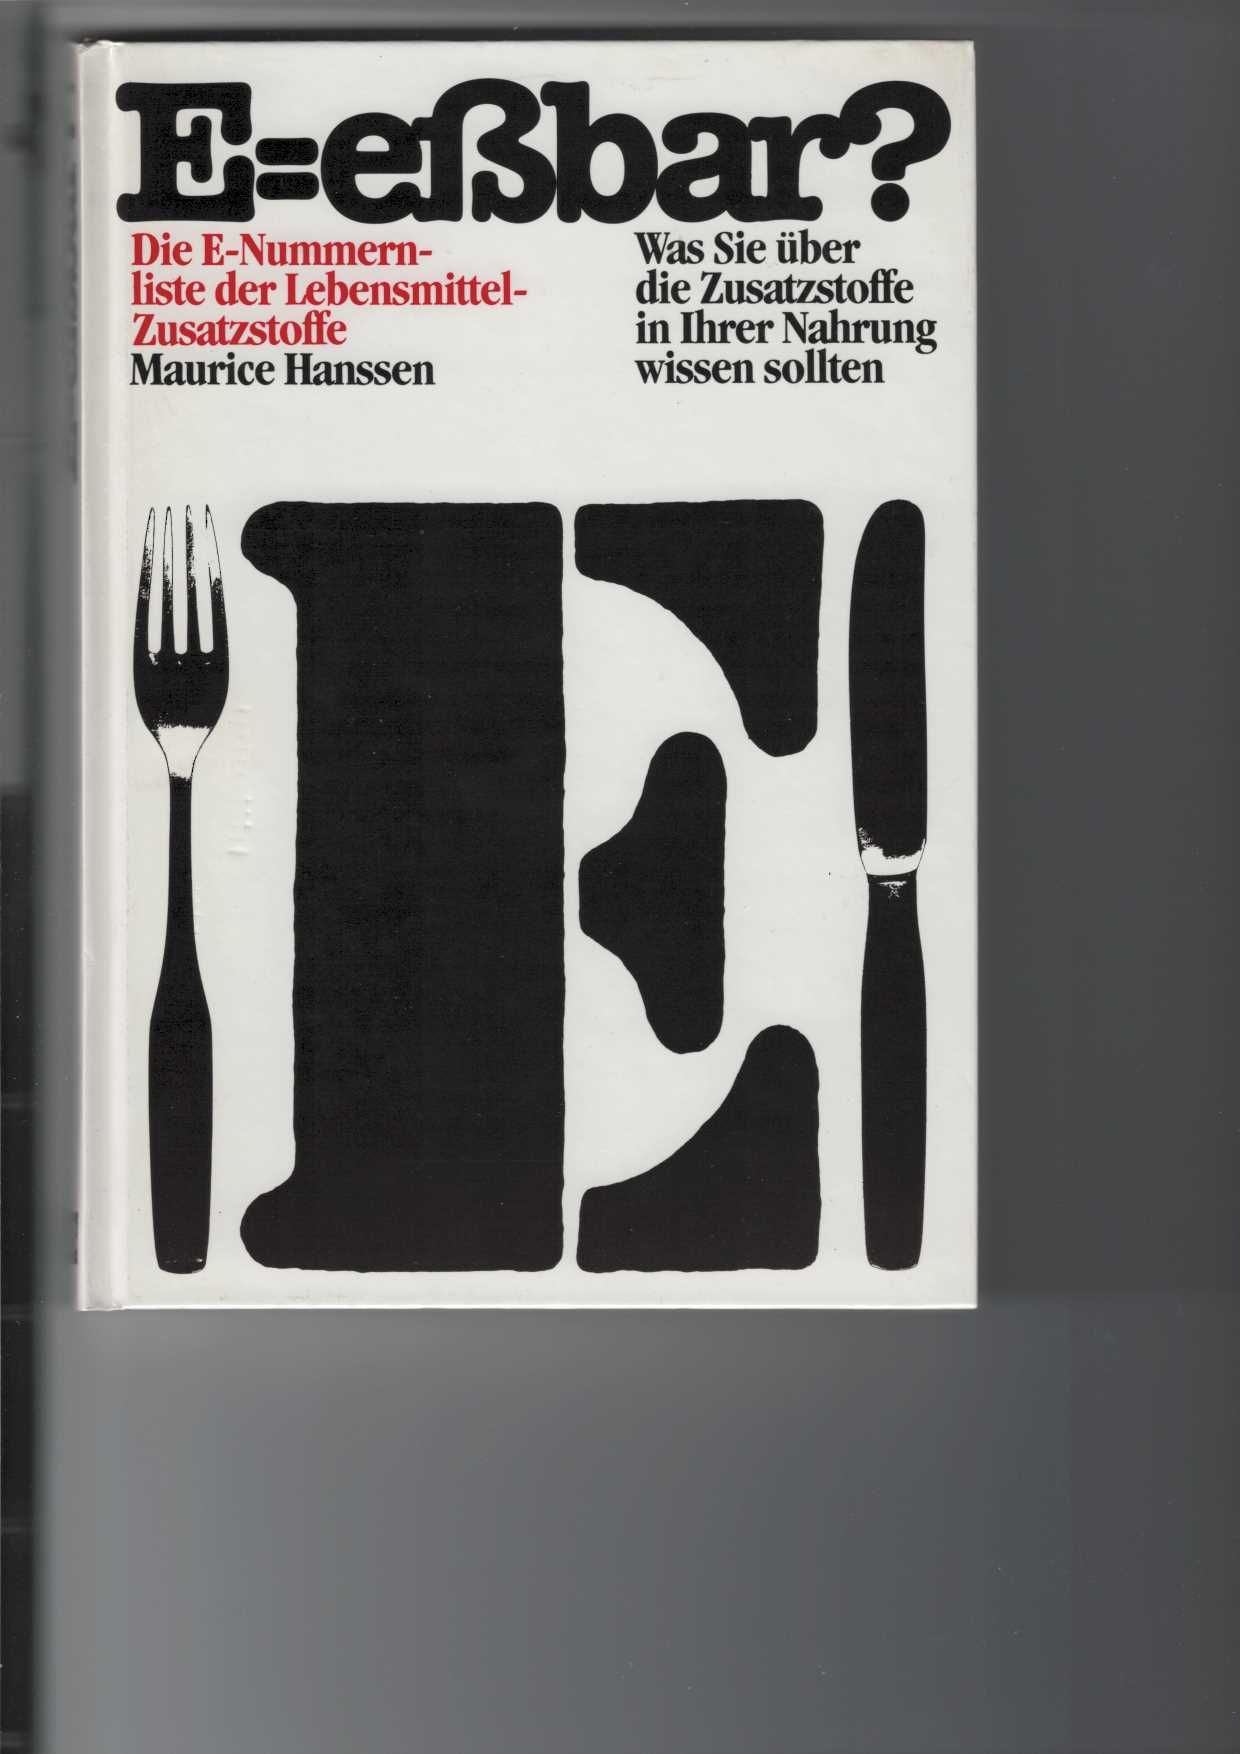 Hanssen, Maurice und Jill Marsden:  E = ebar?  Die E-Nummernliste der Lebensmittel-Zusatzstoffe. 